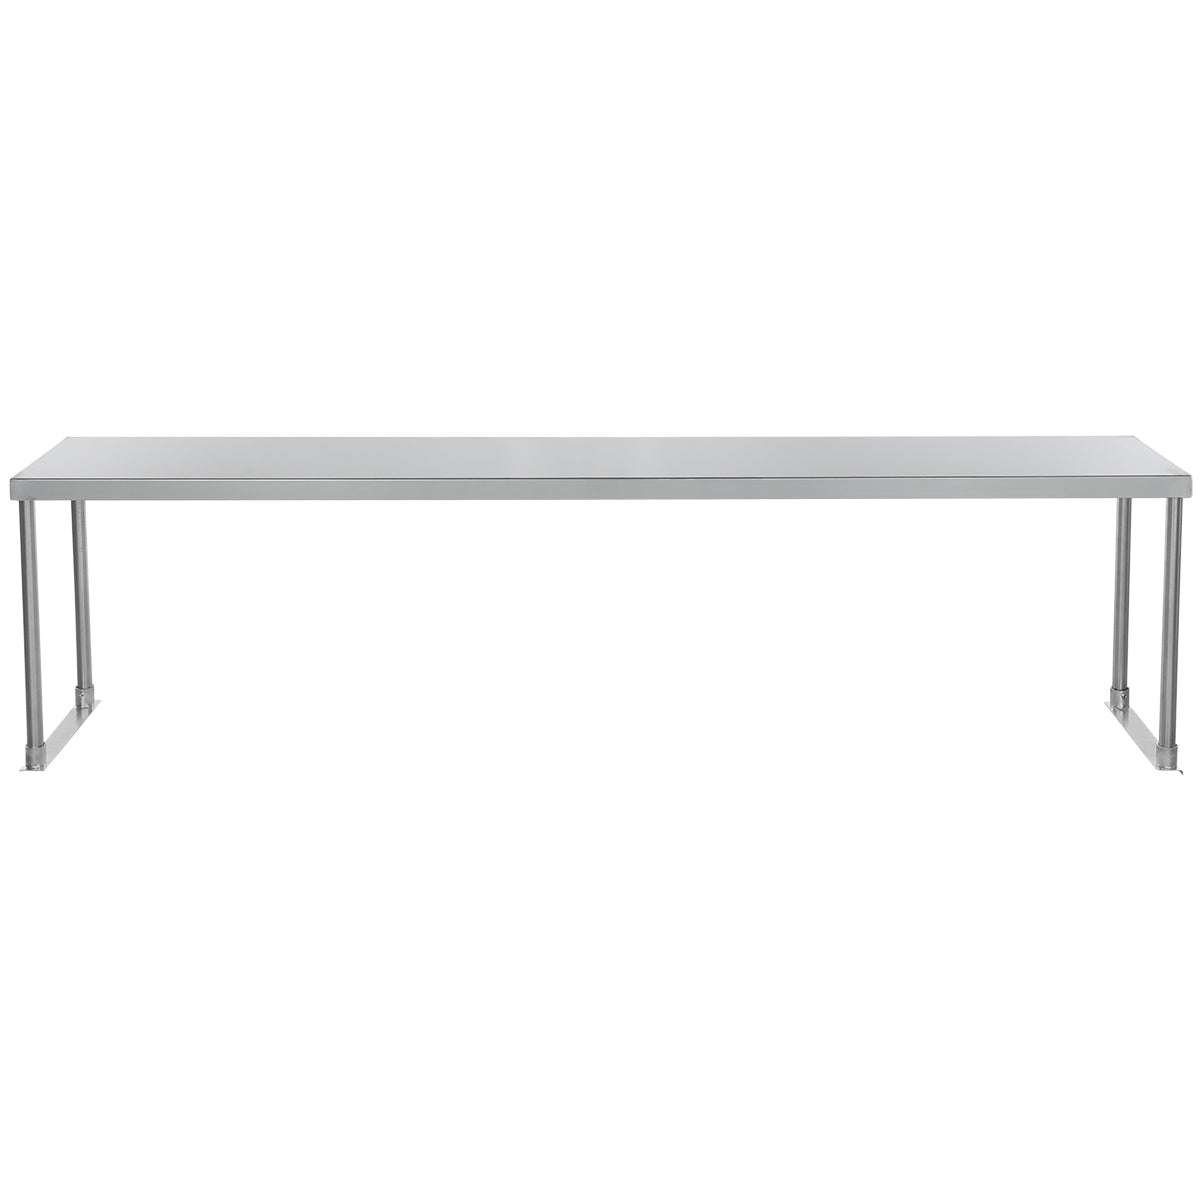 Empura ESOS1272 Overshelf Table-mounted Standard